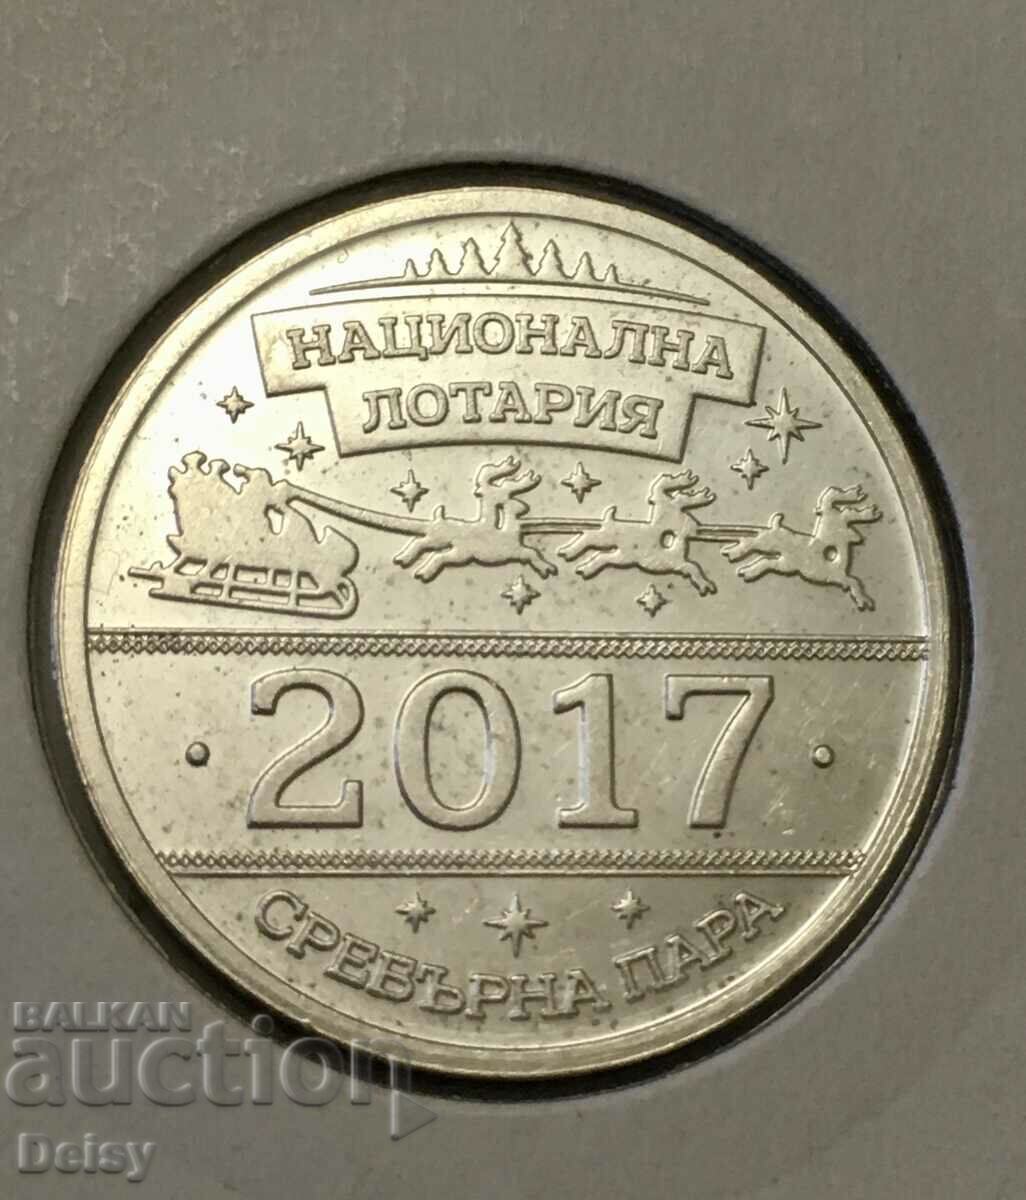 Bulgarian silver token!